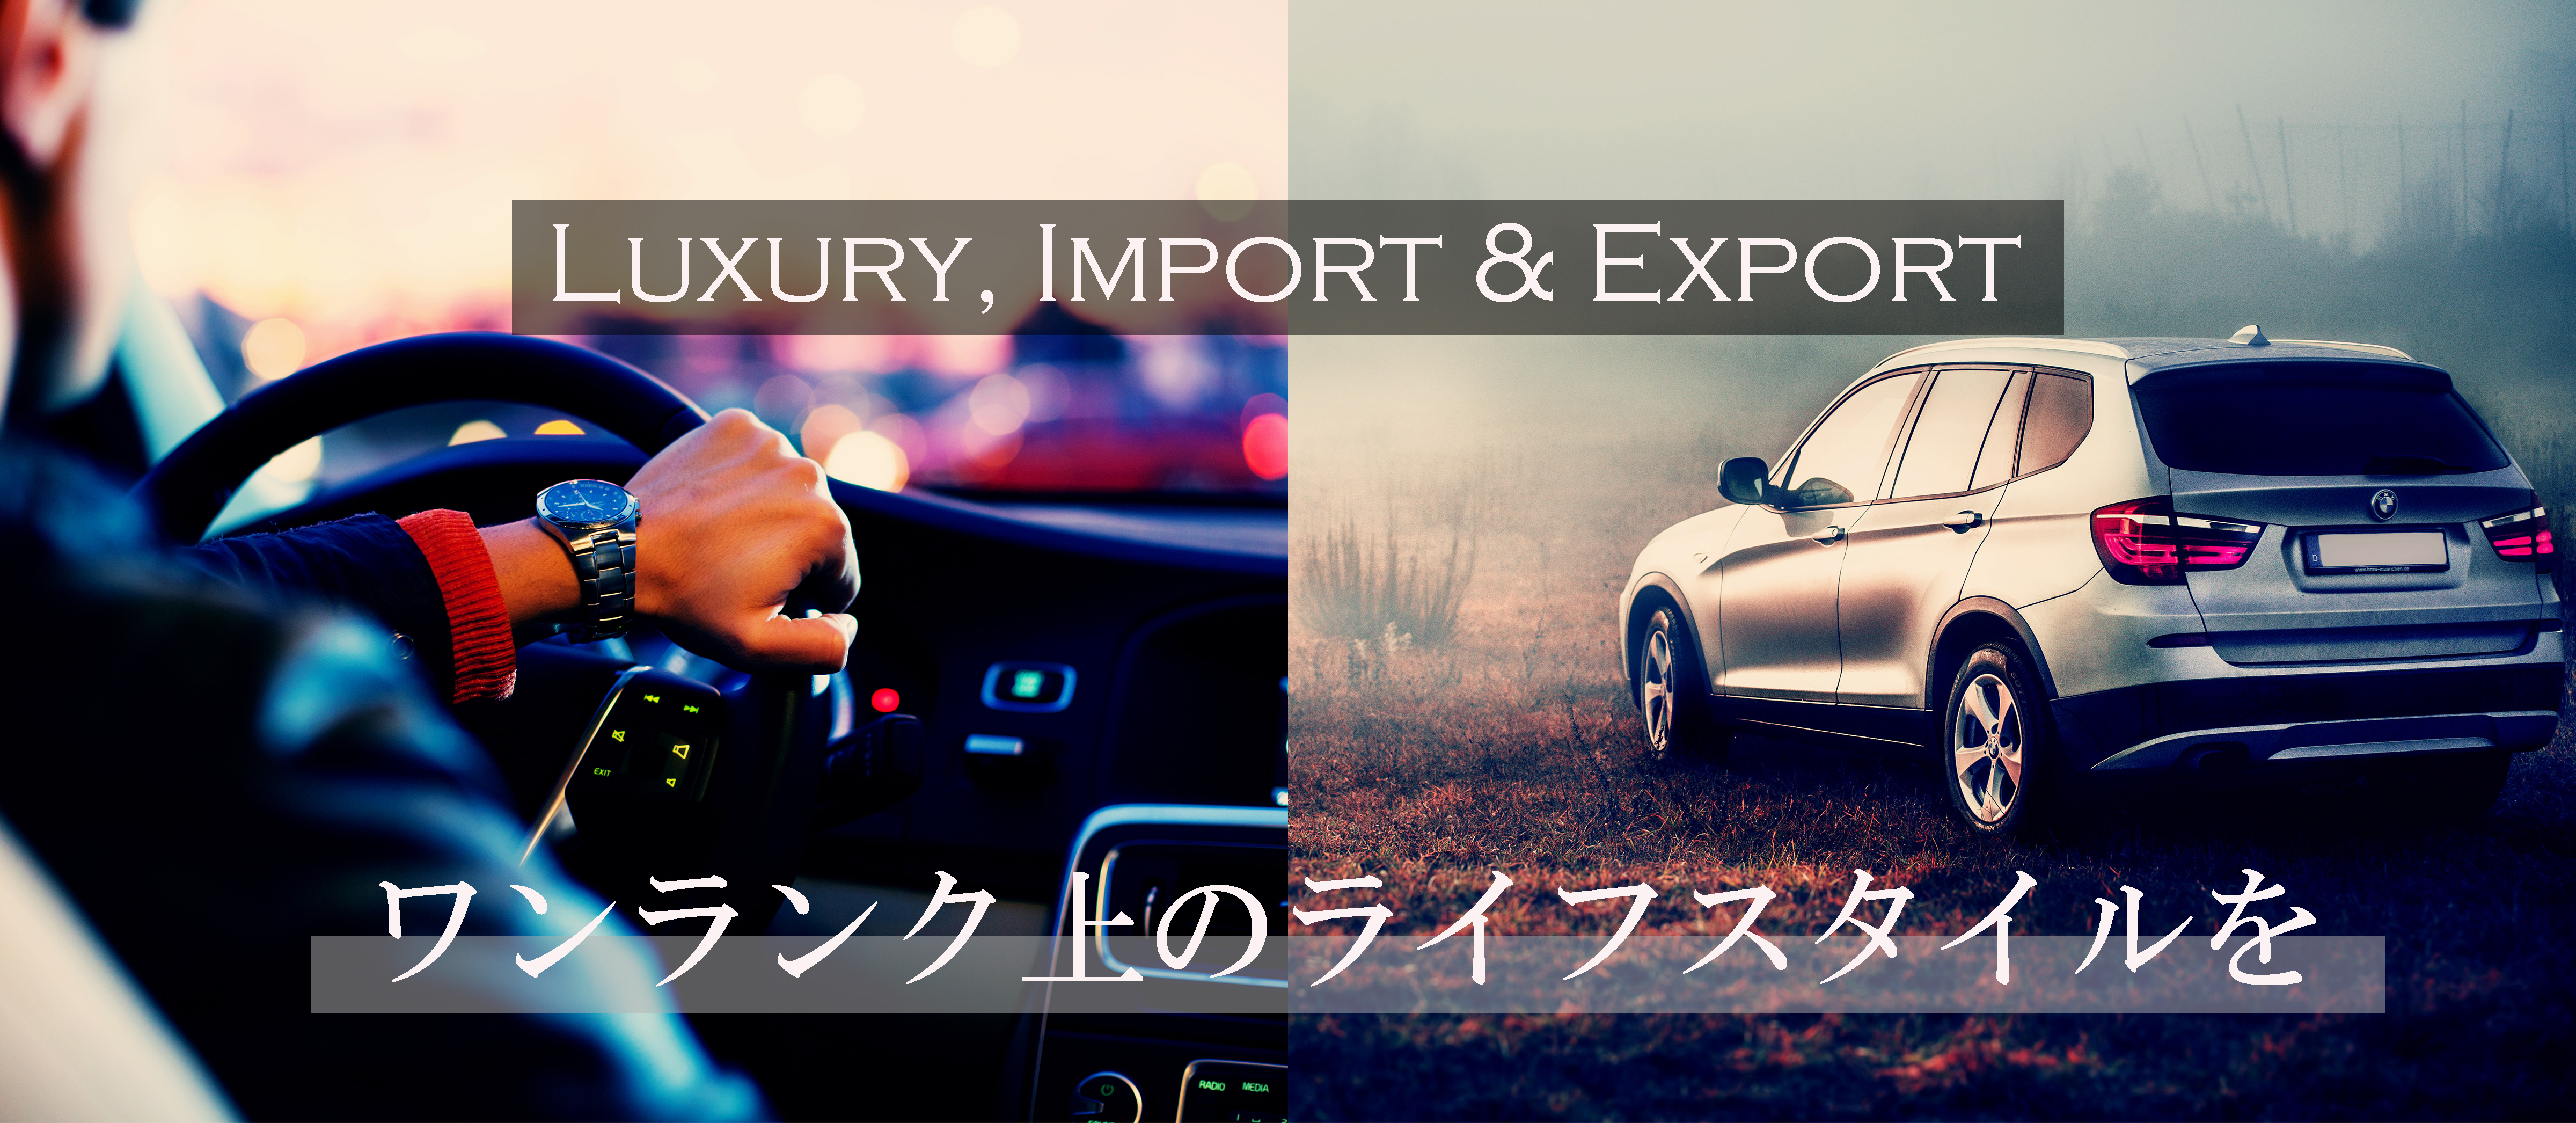 Luxury,import&export